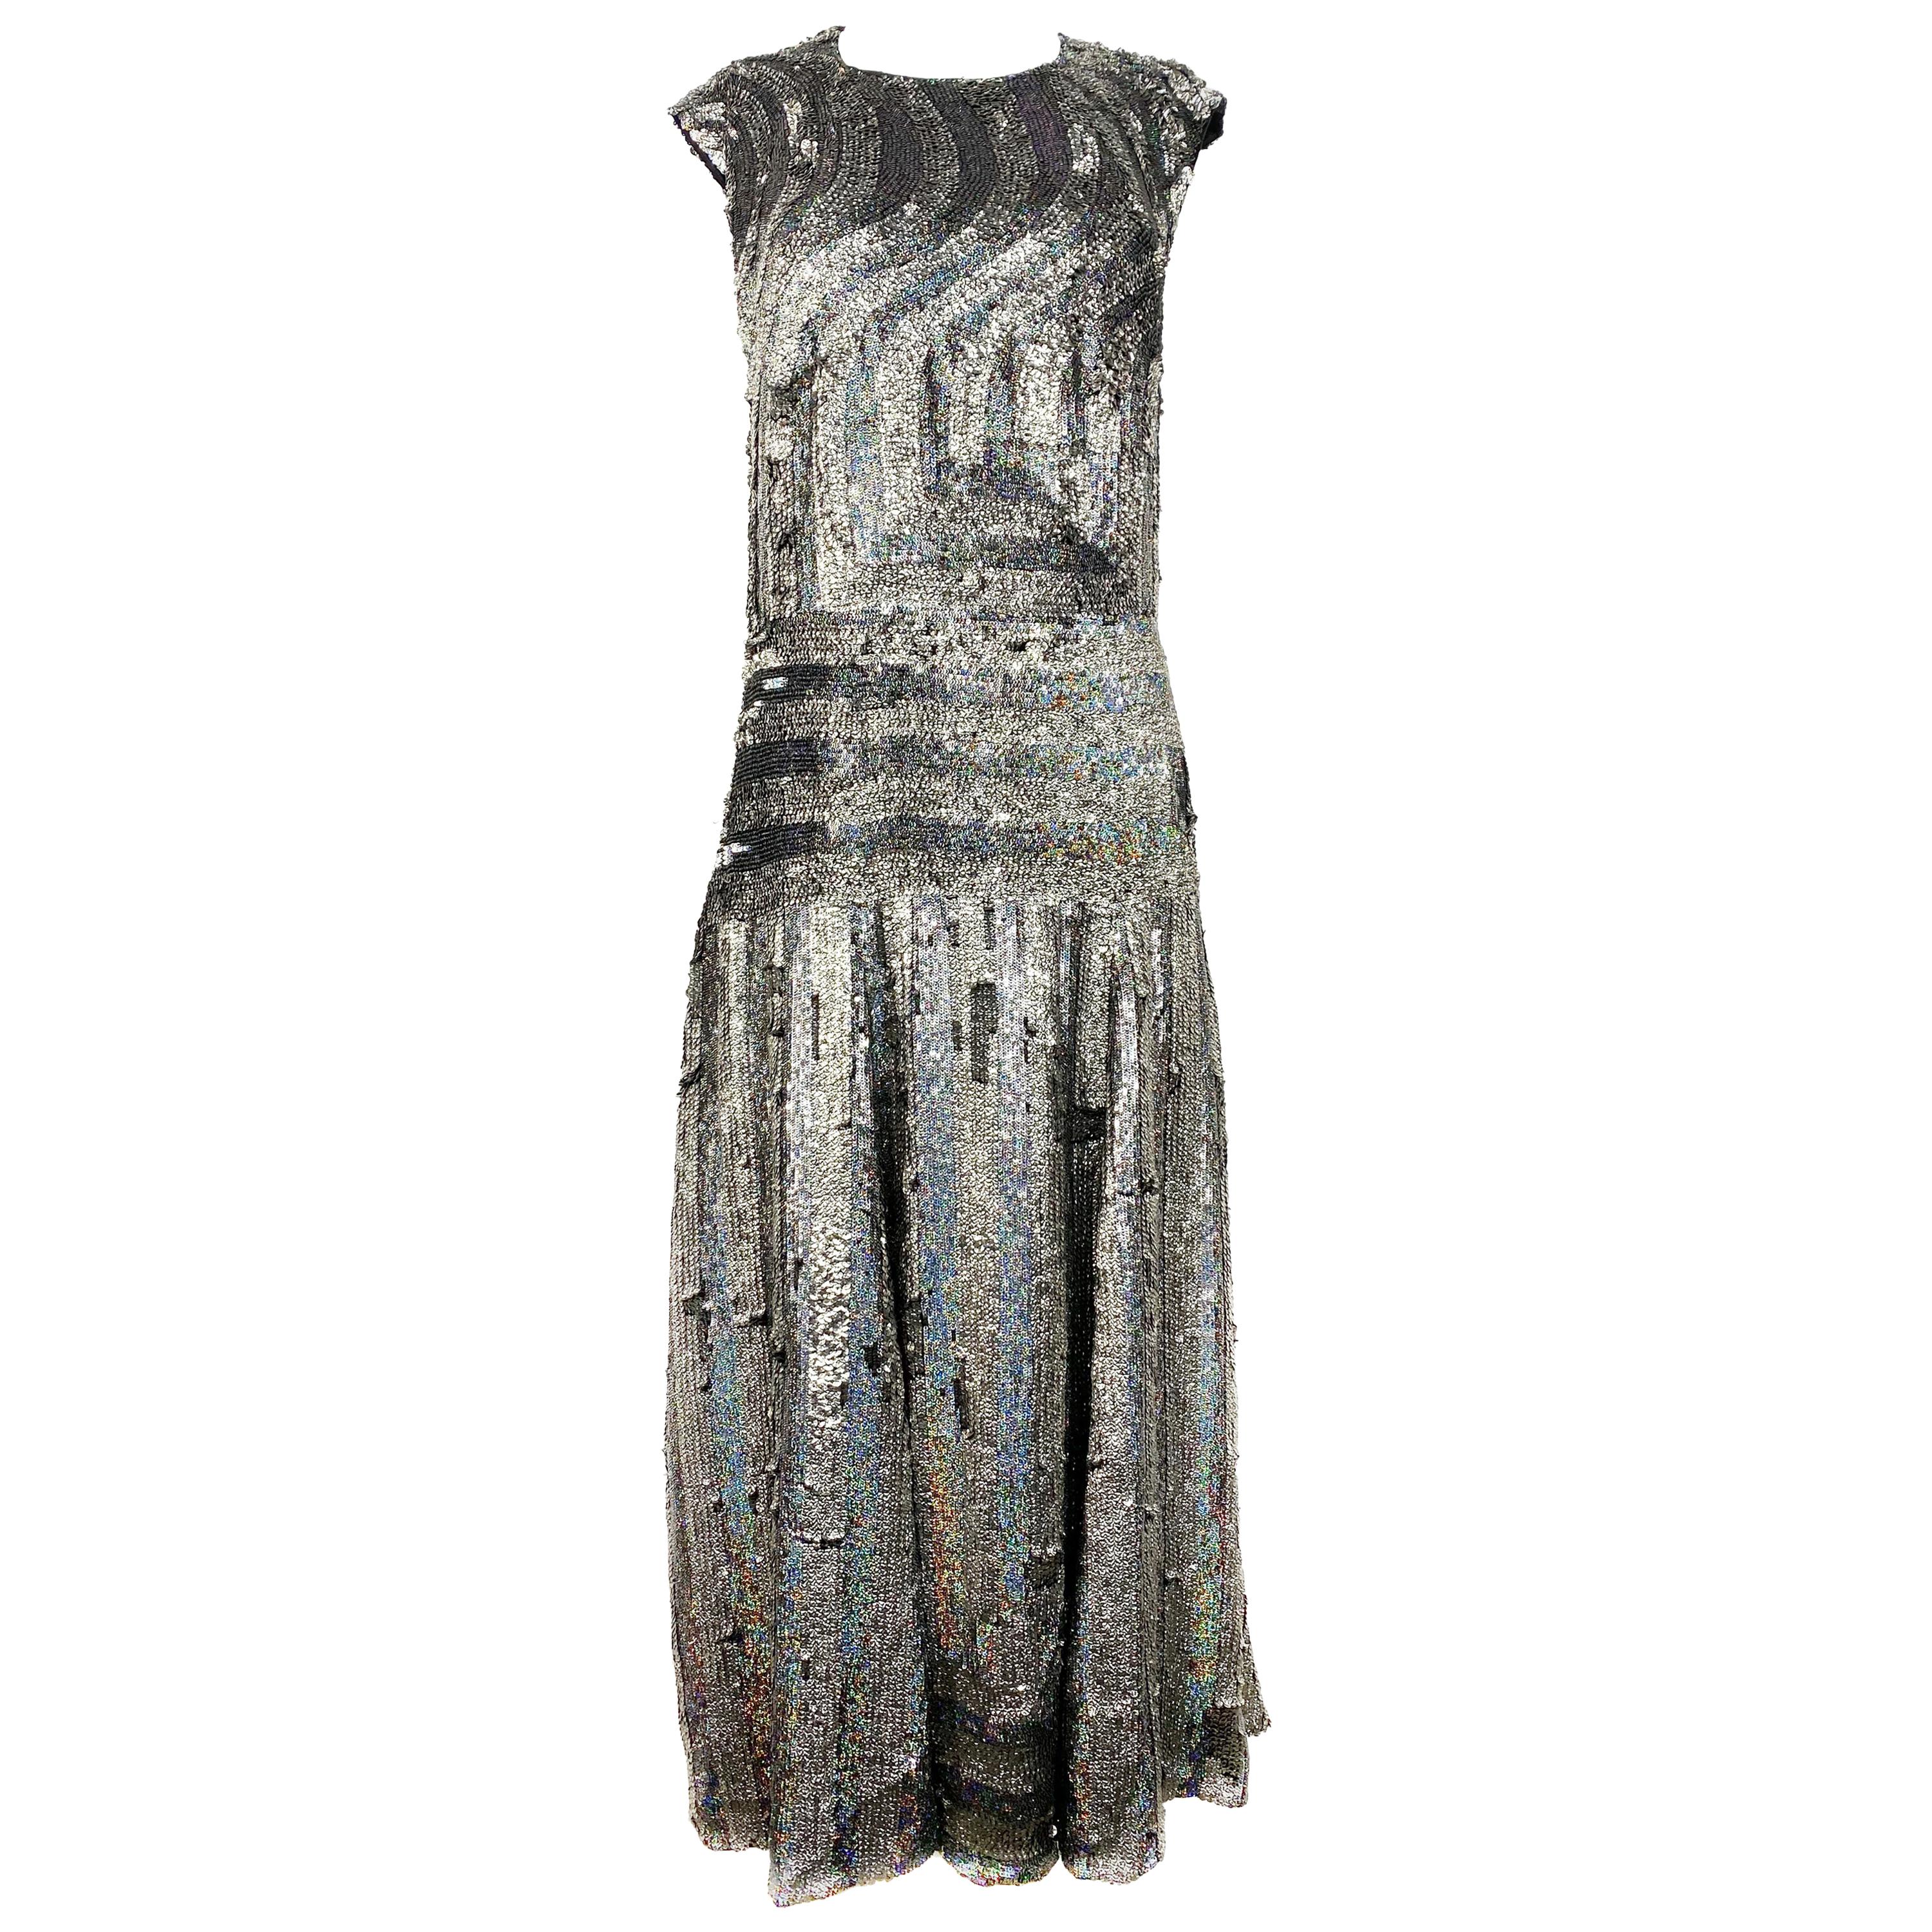 Dries Van Noten Black and Grey Metallic Sequin Evening Dress Size 42